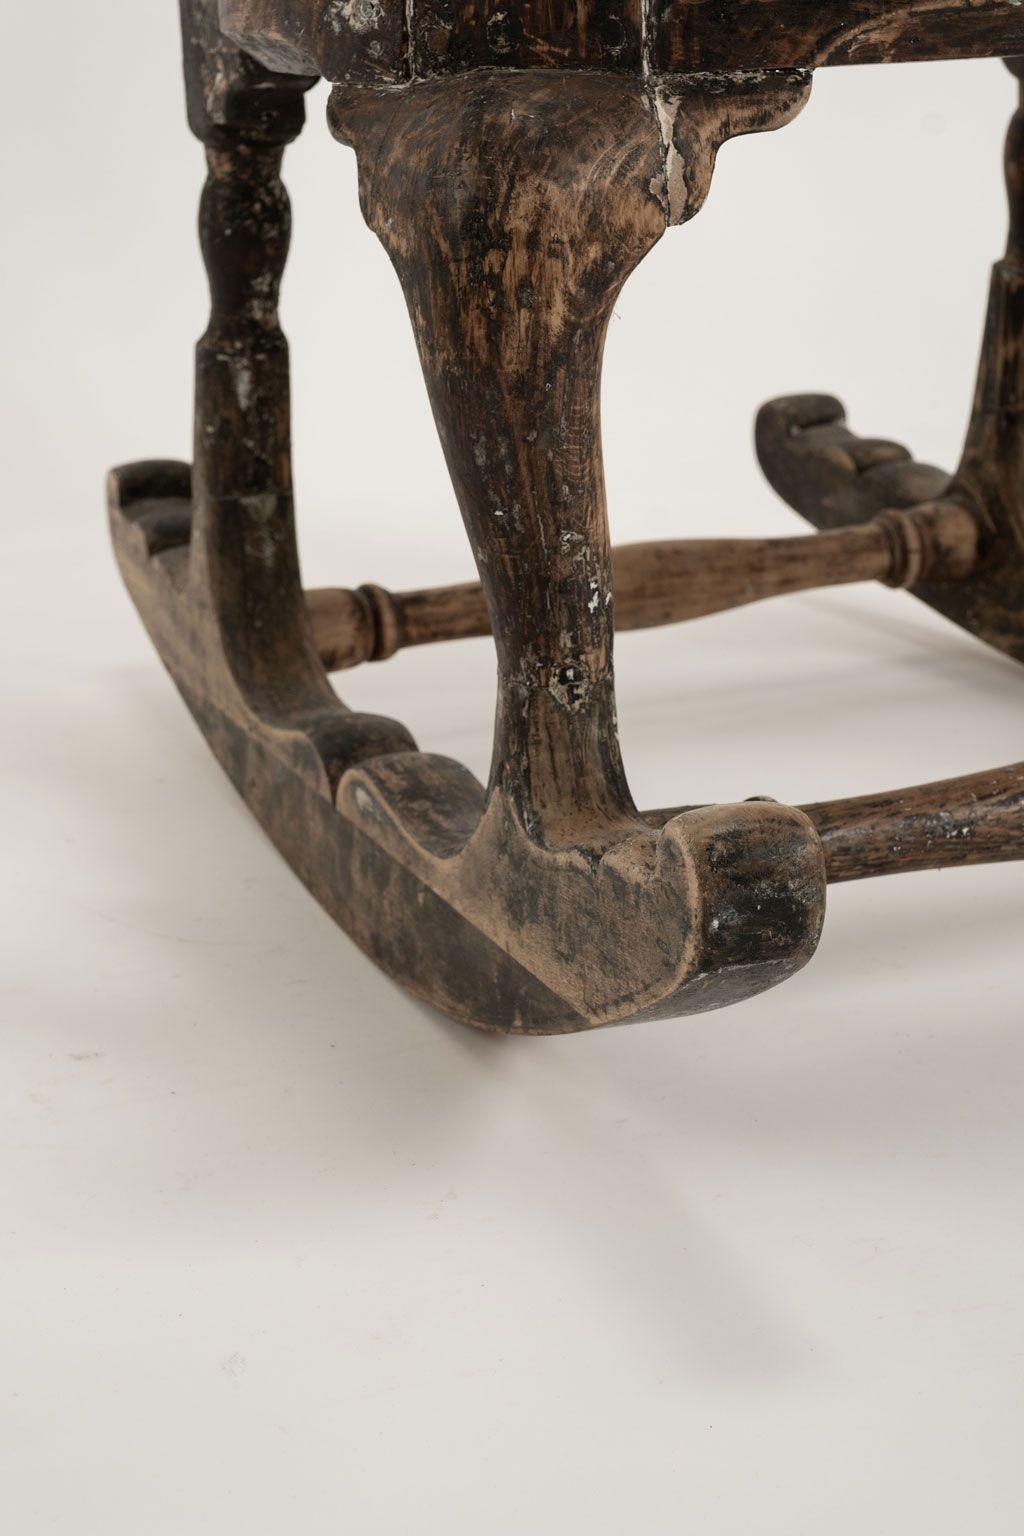 Chaise à bascule suédoise rococo du 18e siècle, vers 1730-1769. Magnifique chaise à bascule de Suède. Décoration et pieds cabriole sculptés à la main dans le style et la période rococo suédois. L'entretoise est tournée et le dossier est formé d'une